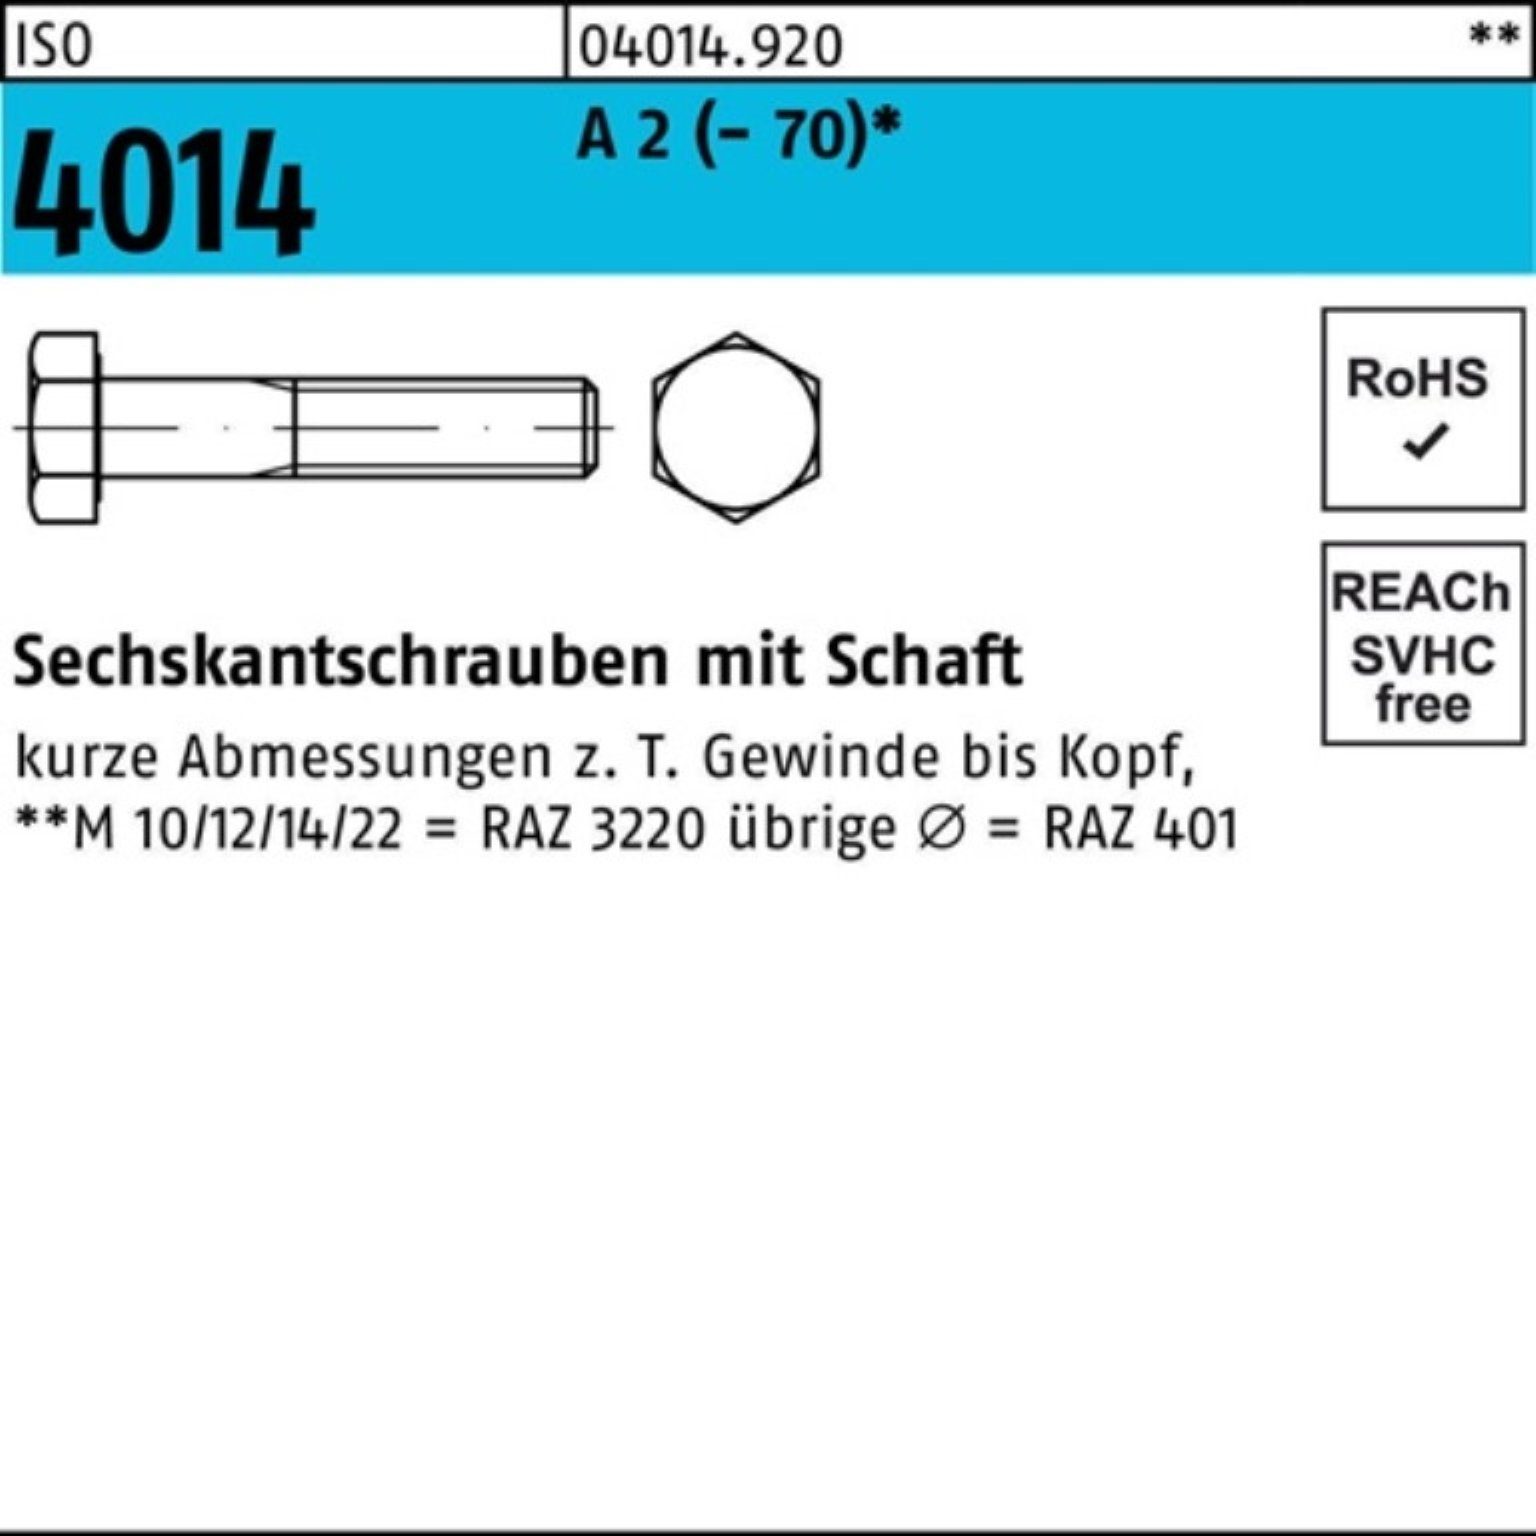 Bufab Sechskantschraube 100er Pack Sechskantschraube ISO 4014 Schaft M6x 90 A 2 (70) 100 St